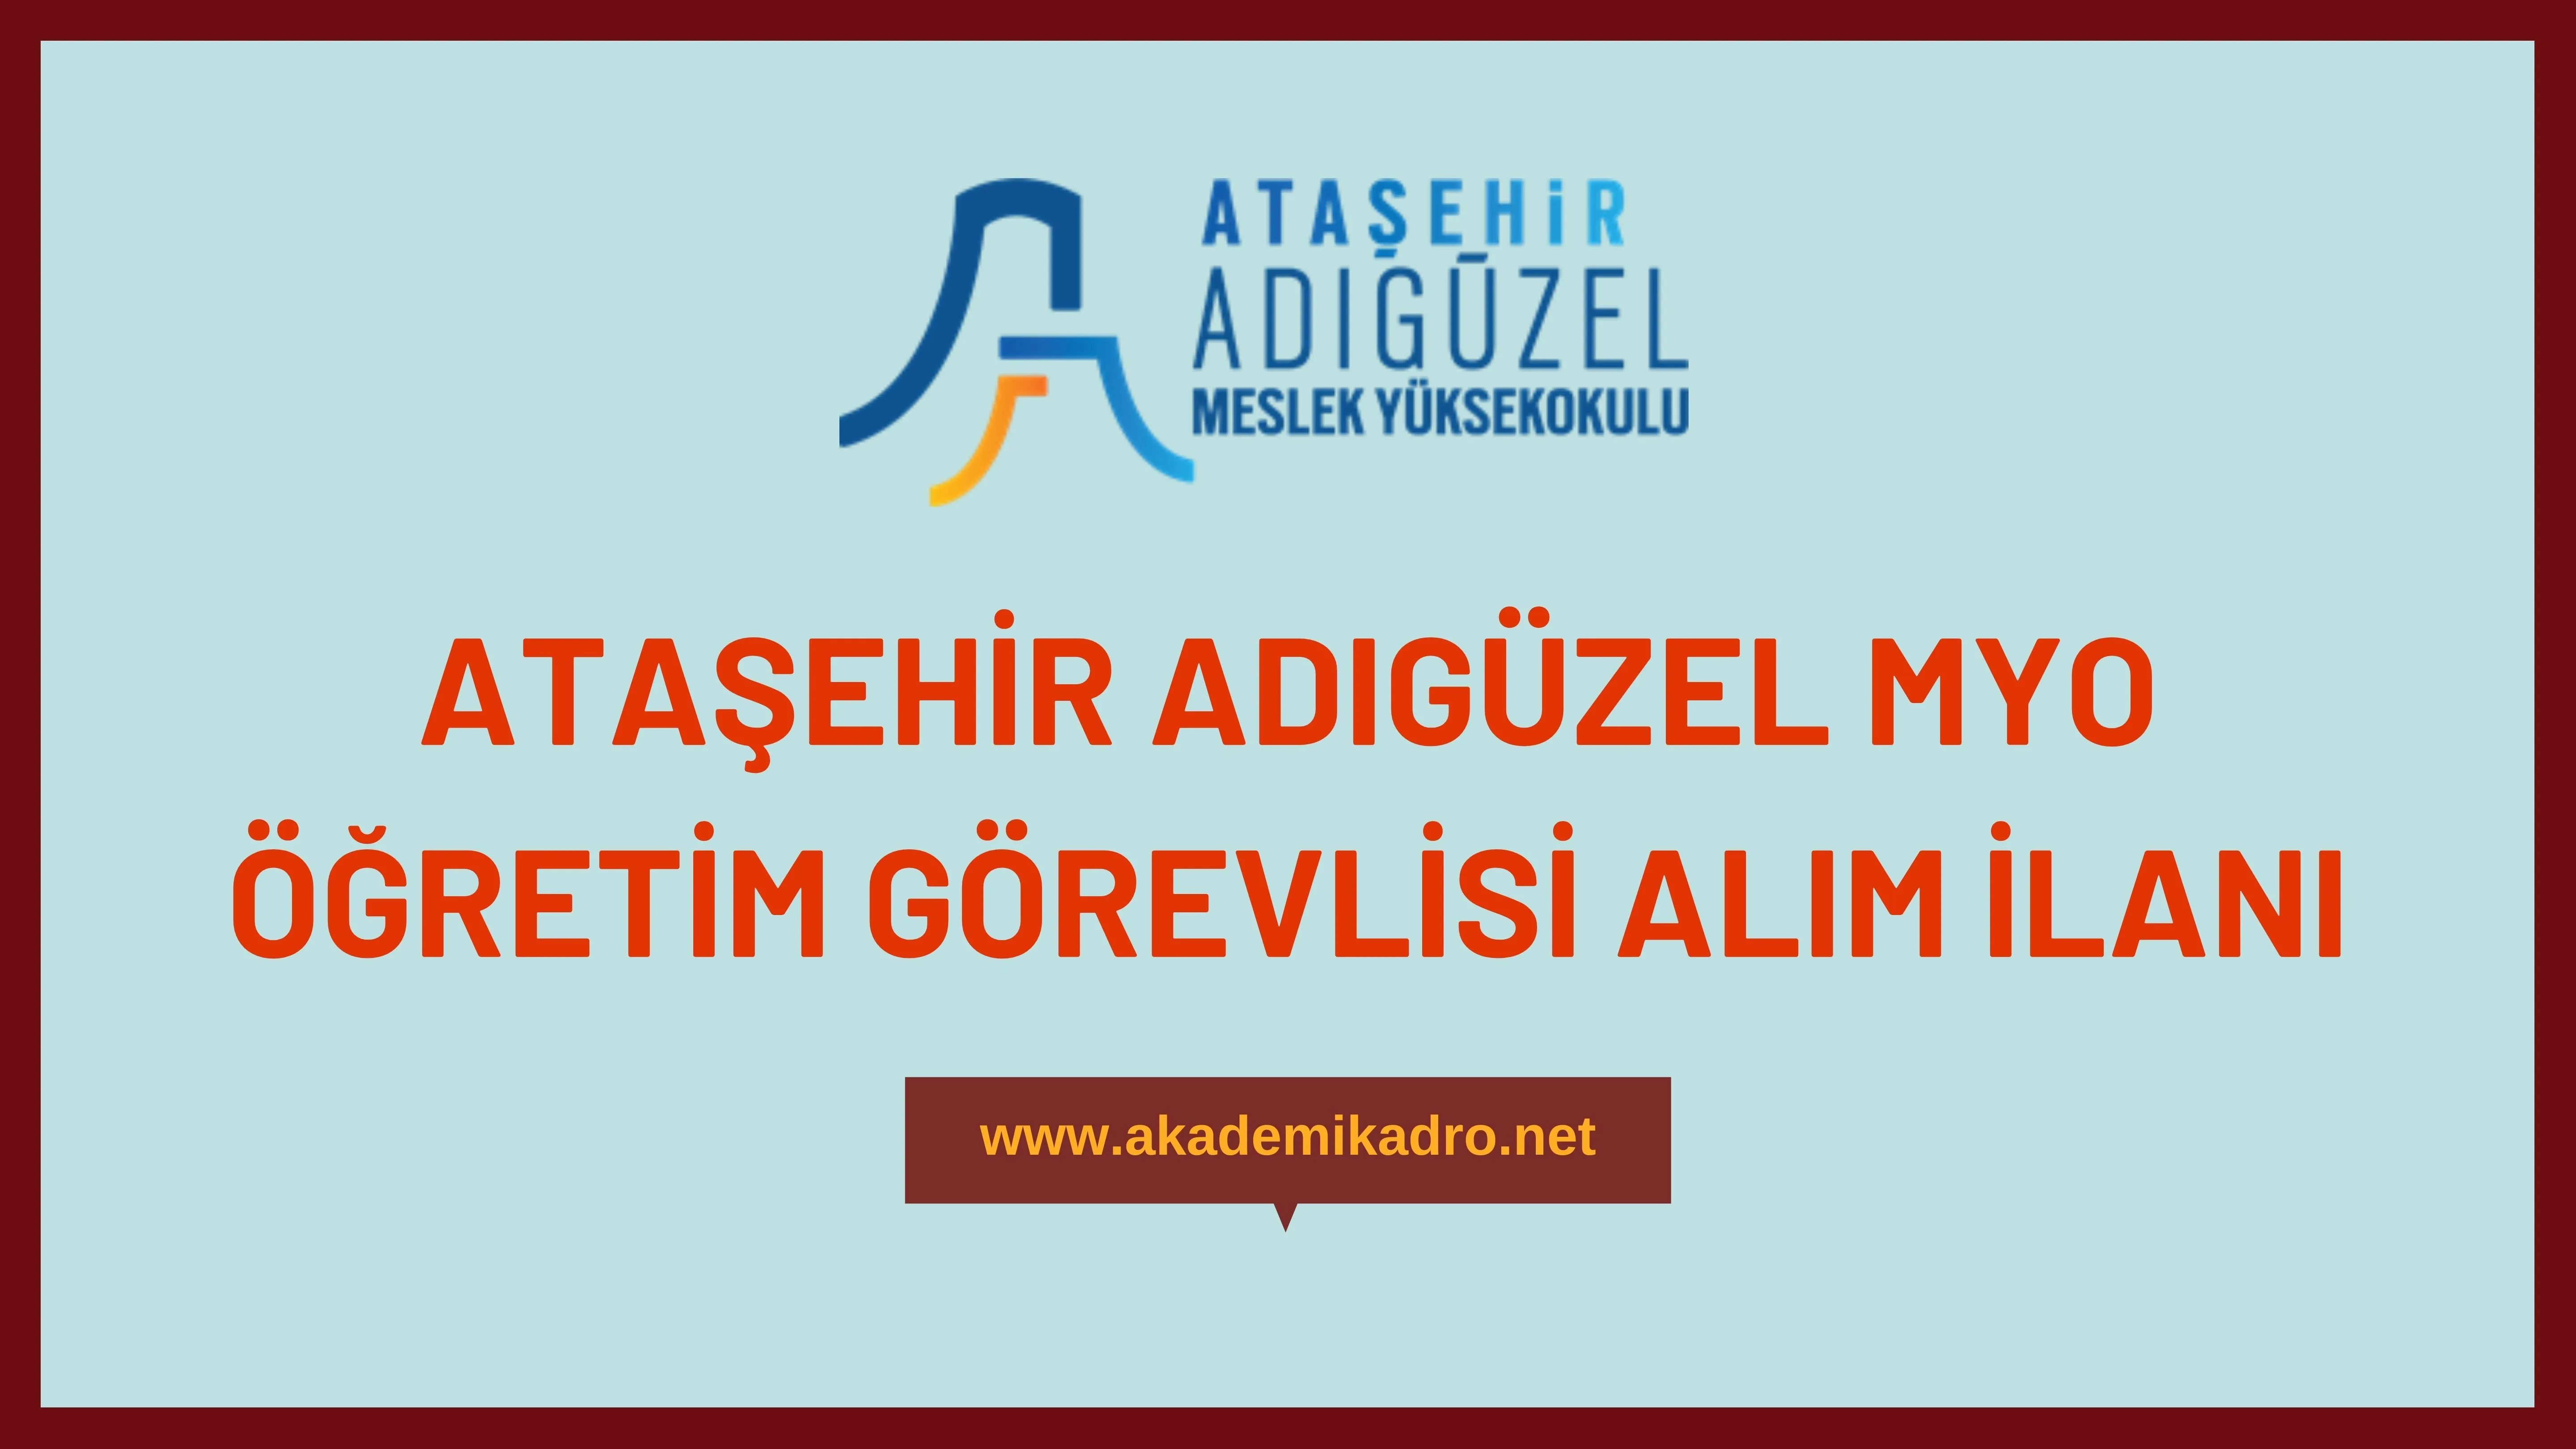 Ataşahir Adıgüzel Meslek Yüksekokulu 3 Öğretim görevlisi alacaktır. Son başvuru tarihi 13 Şubat 2023